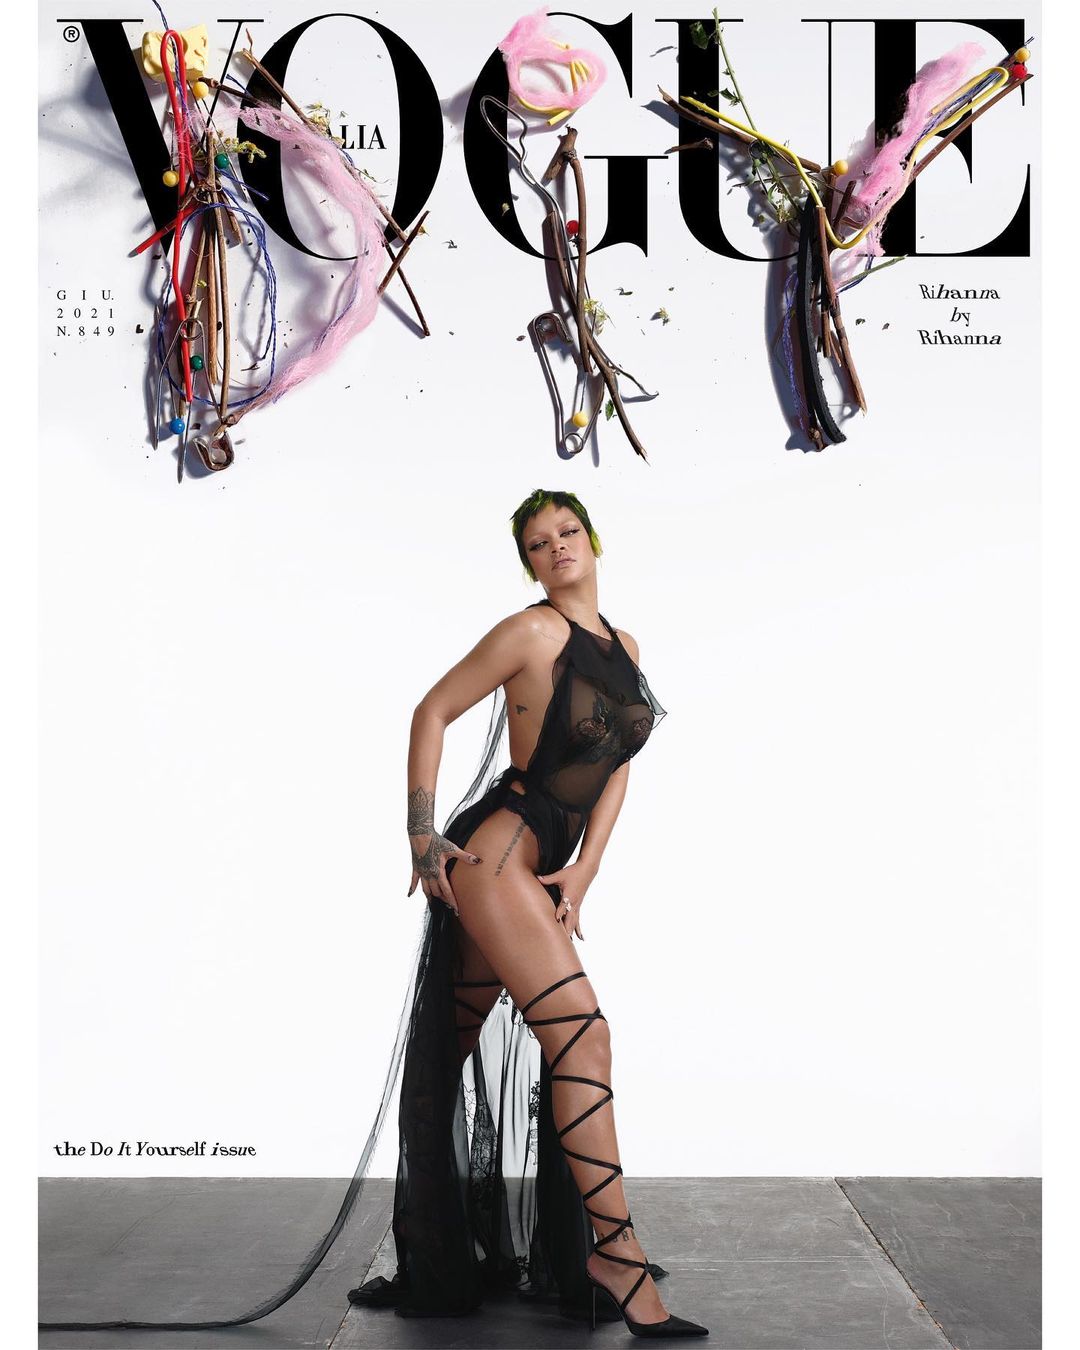 Rihanna trở thành gương mặt trang bìa số tháng 7 của Vogue Italia. Đúng như chủ đề của số tháng 7 'Do It Yourself' - một mình làm hết, bên cạnh vị trí người mẫu, Rihanna cũng góp mặt trong những vị trí quan trọng như nhiếp ảnh gia, giám đốc sáng tạo, nhà tài trợ và stylist.